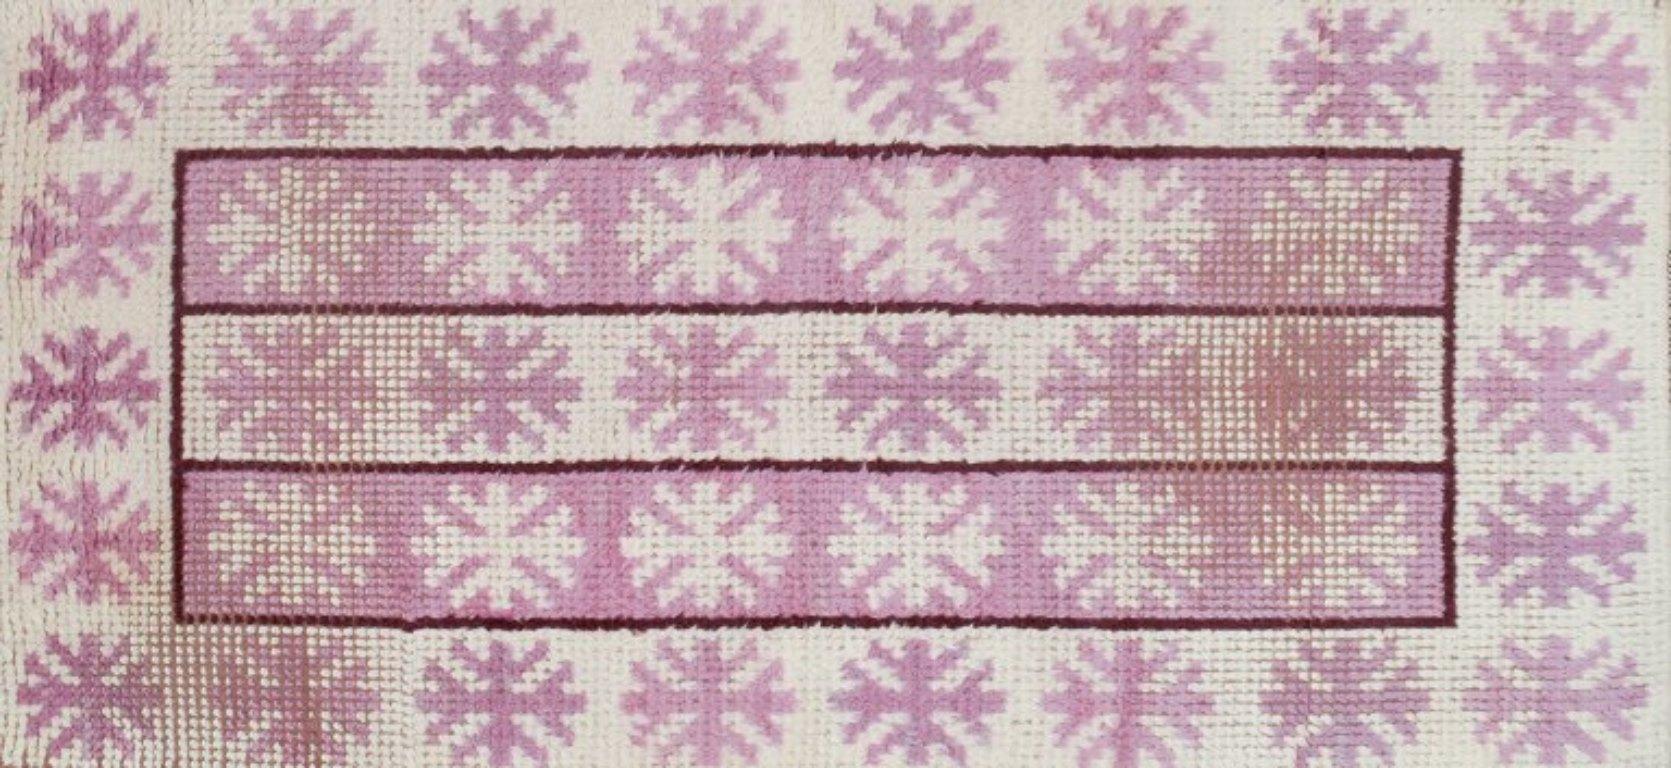 Märta Måås-Fjetterström (1873-1941), schwedische Textildesignerin.
Einzigartiger handgewebter Rya-Teppich aus Wolle in modernistischem Design. 
Rosa und Weiß in einem geometrischen Muster.
Erste Hälfte des 20. Jahrhunderts.
Unterzeichnetes